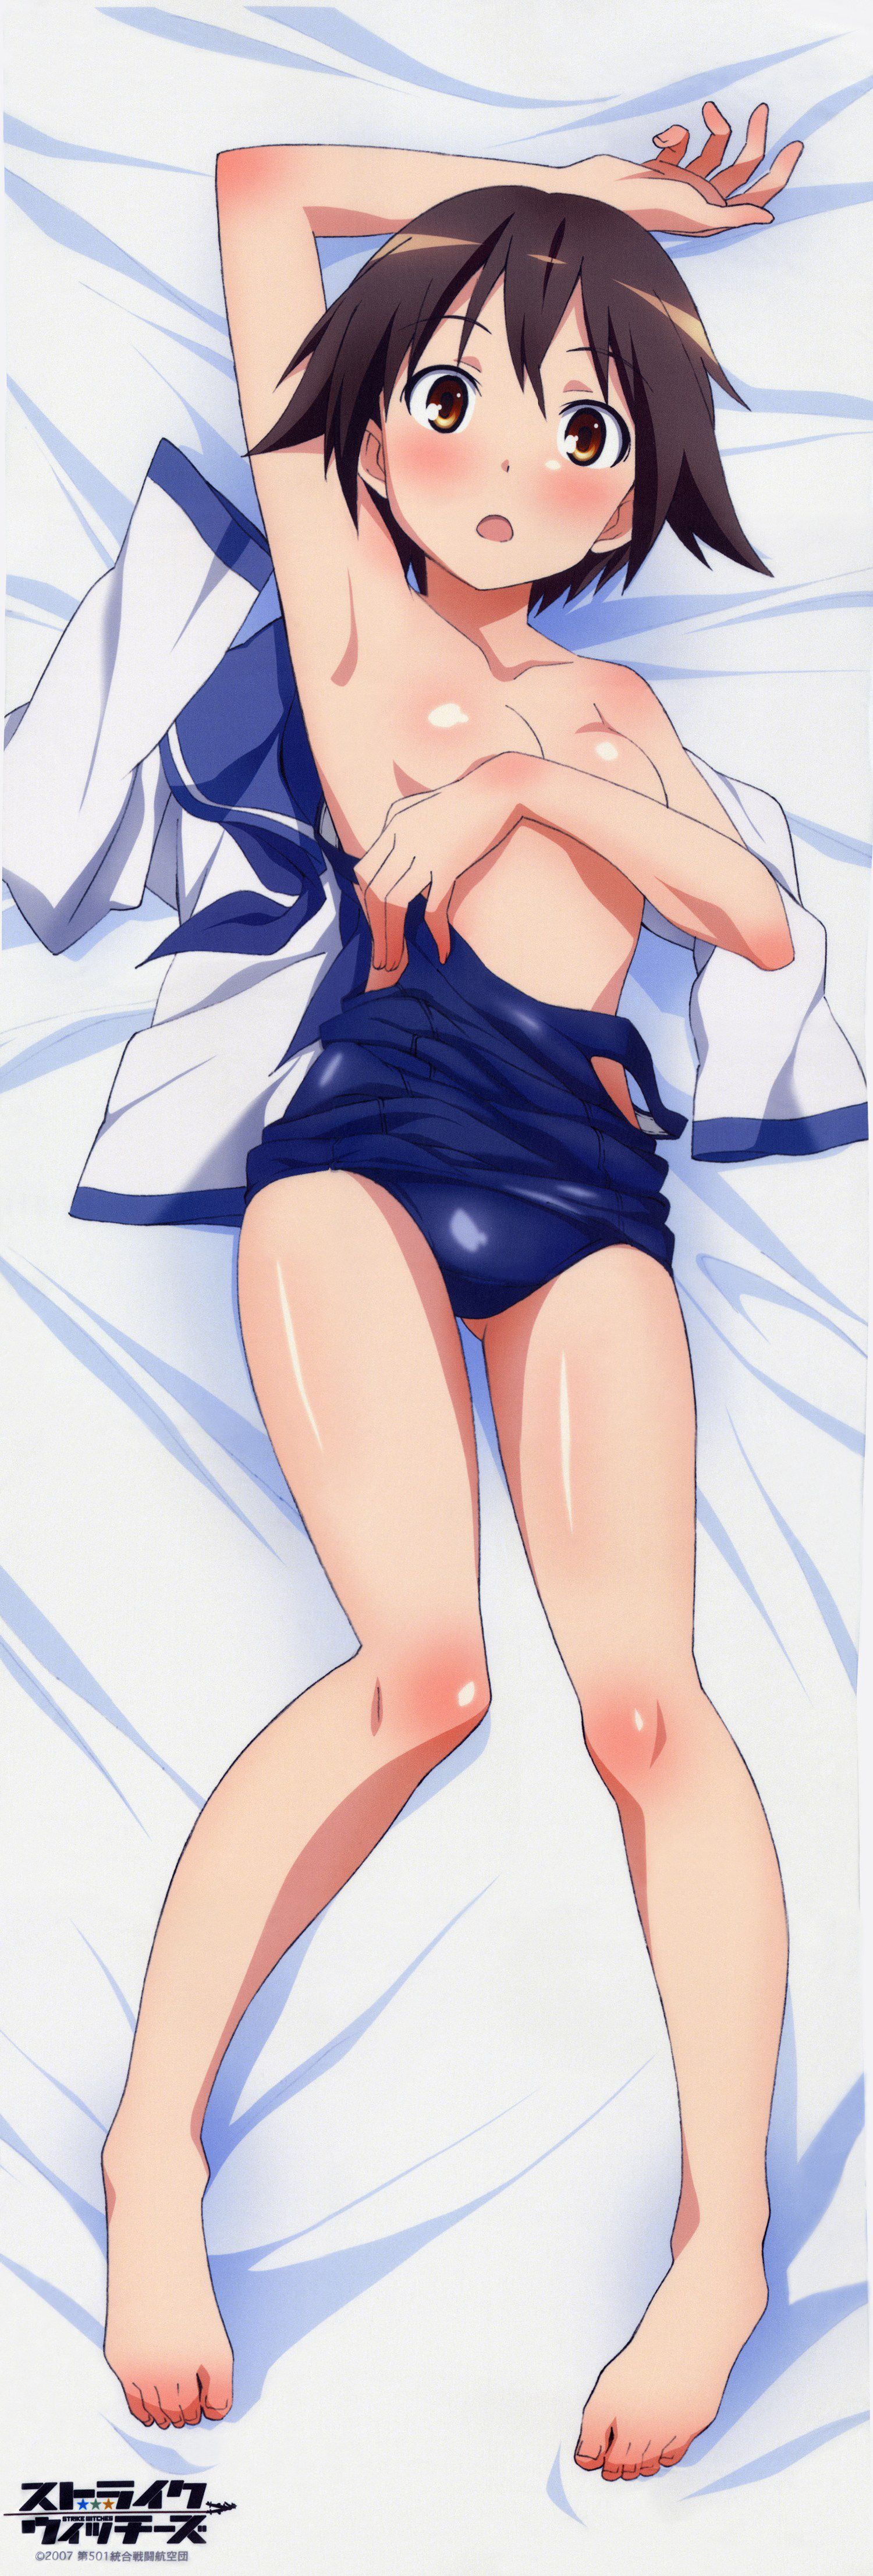 [Dakimakura] image of erotic Dakimakura cover anime game system part 80 2